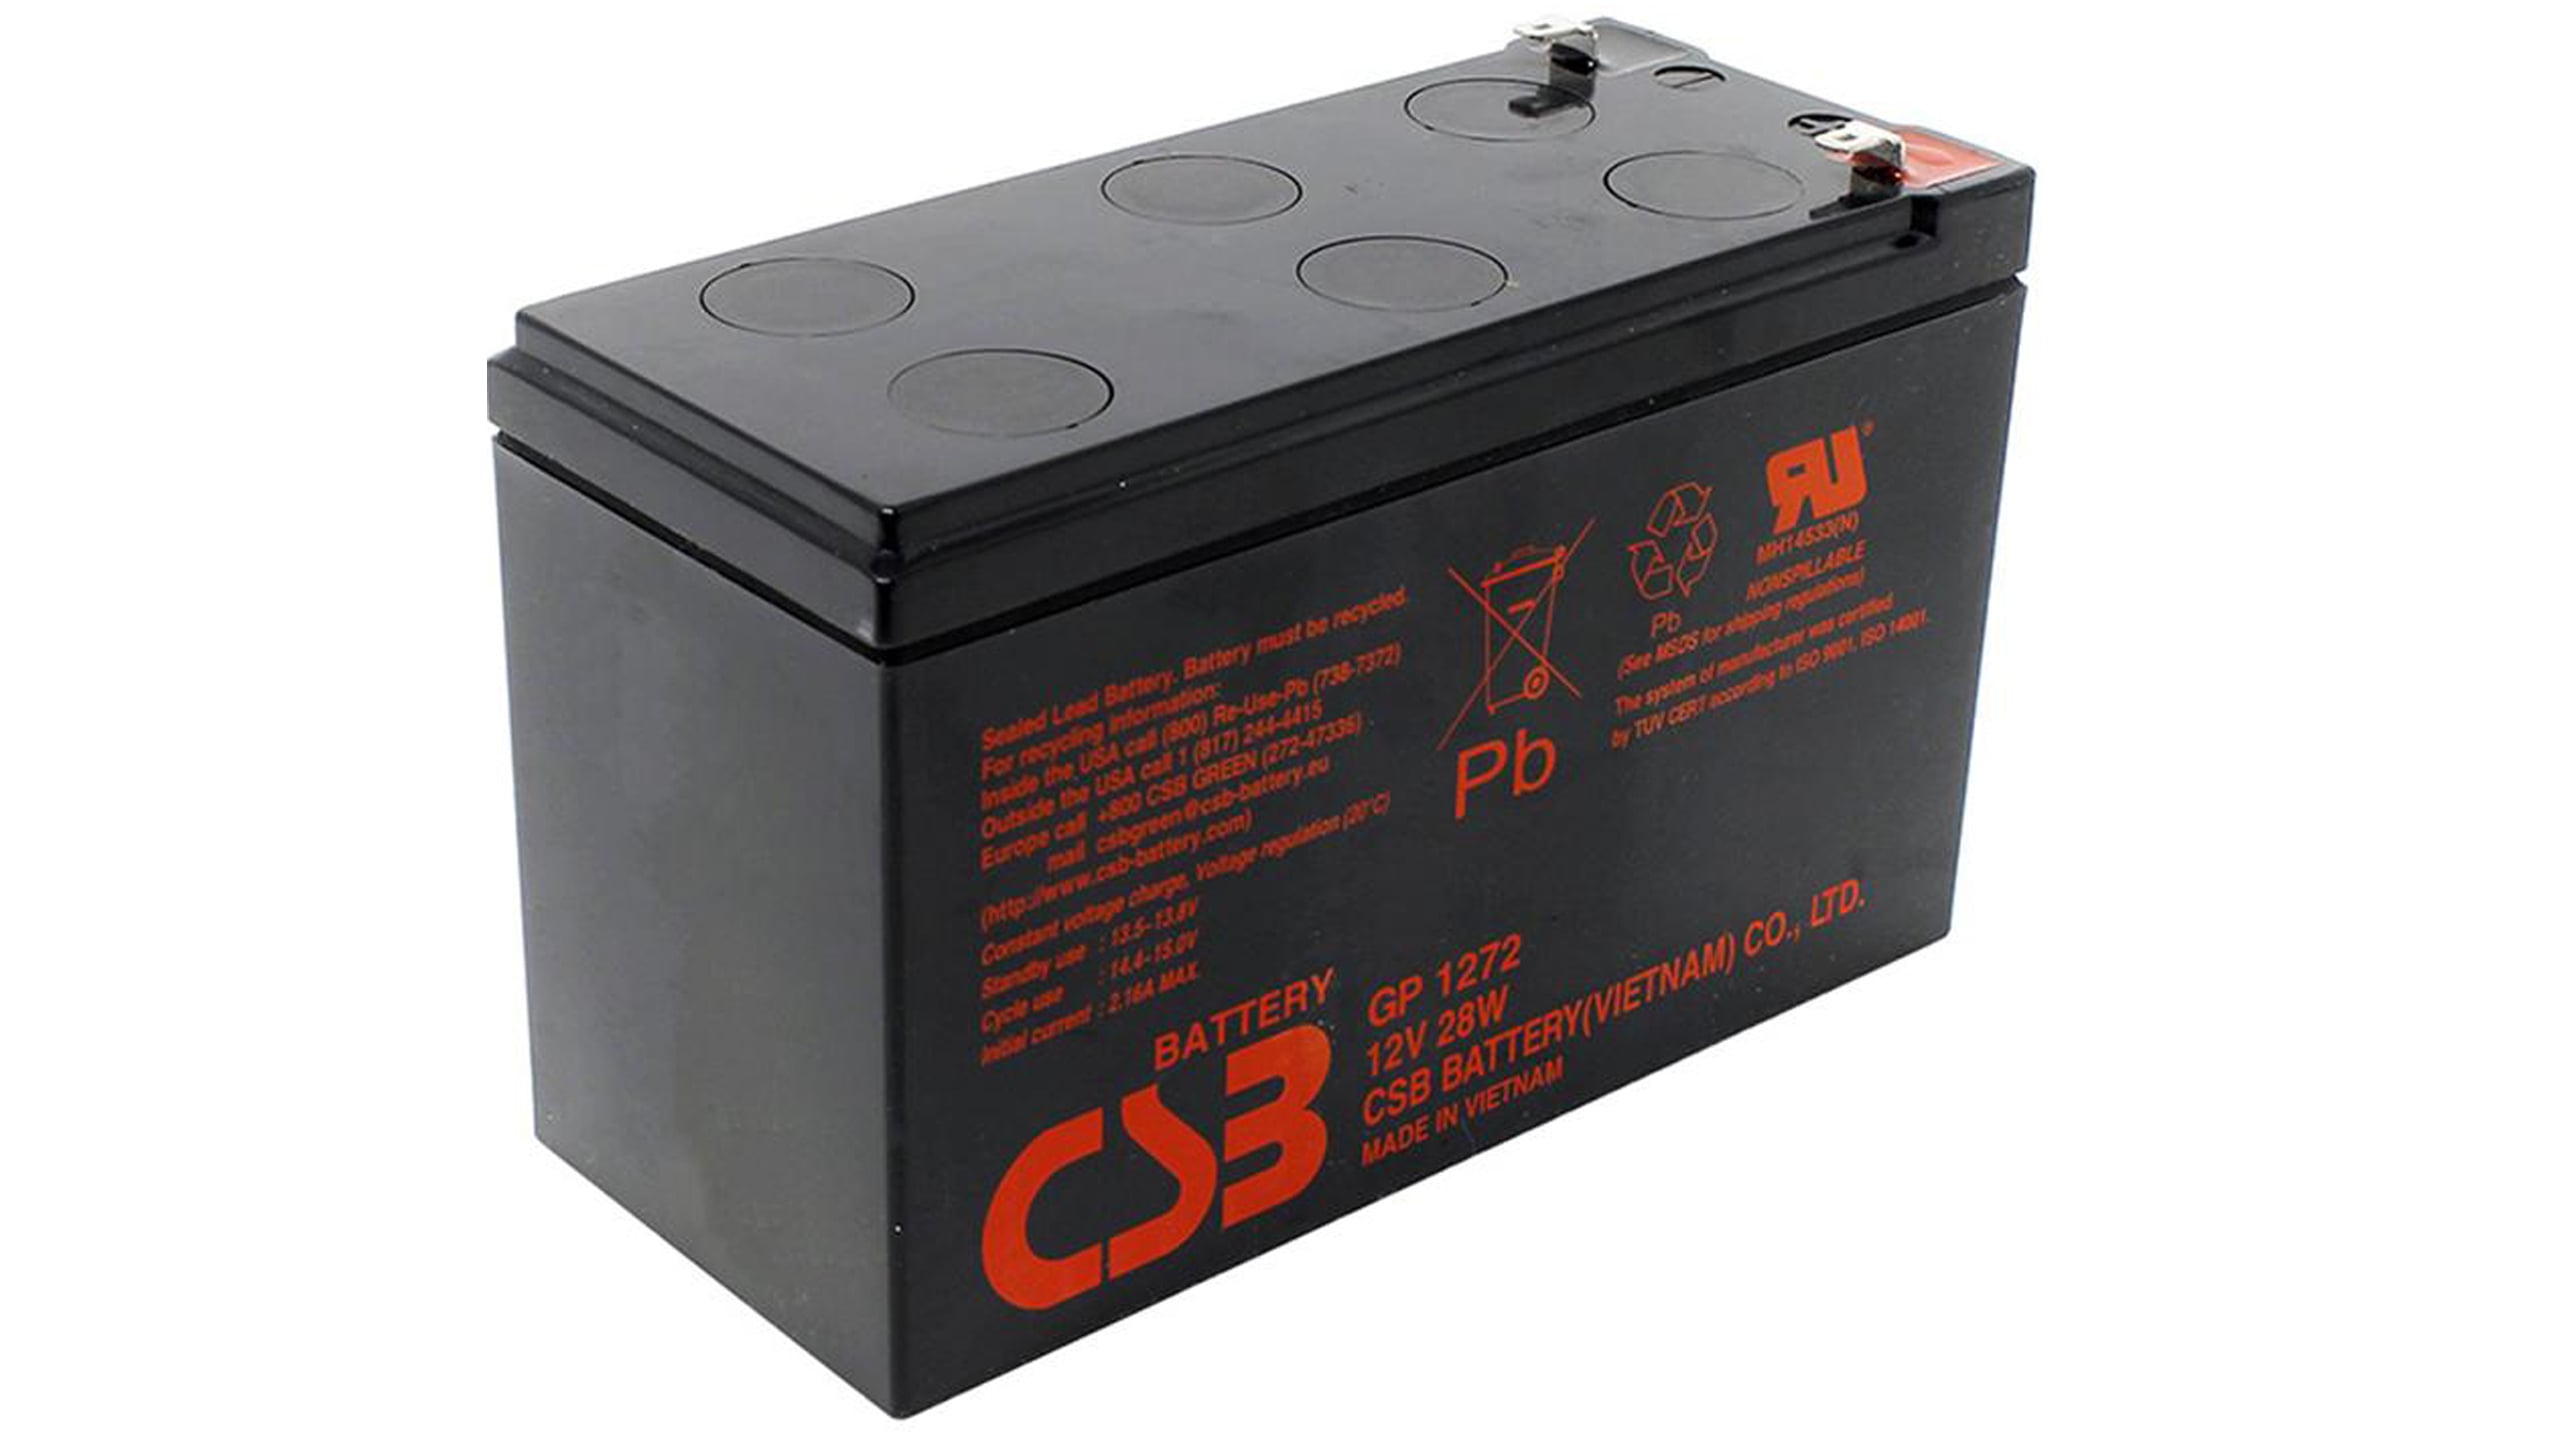 12 про аккумулятор. Батарея аккумуляторная CSB gpl1272 f2. CSB GP 1272 f2. Аккумулятор CSB GP 1272, 12v 7 Ah f2. Батарея аккумуляторная CSB gp1272 (12v/7.2Ah).